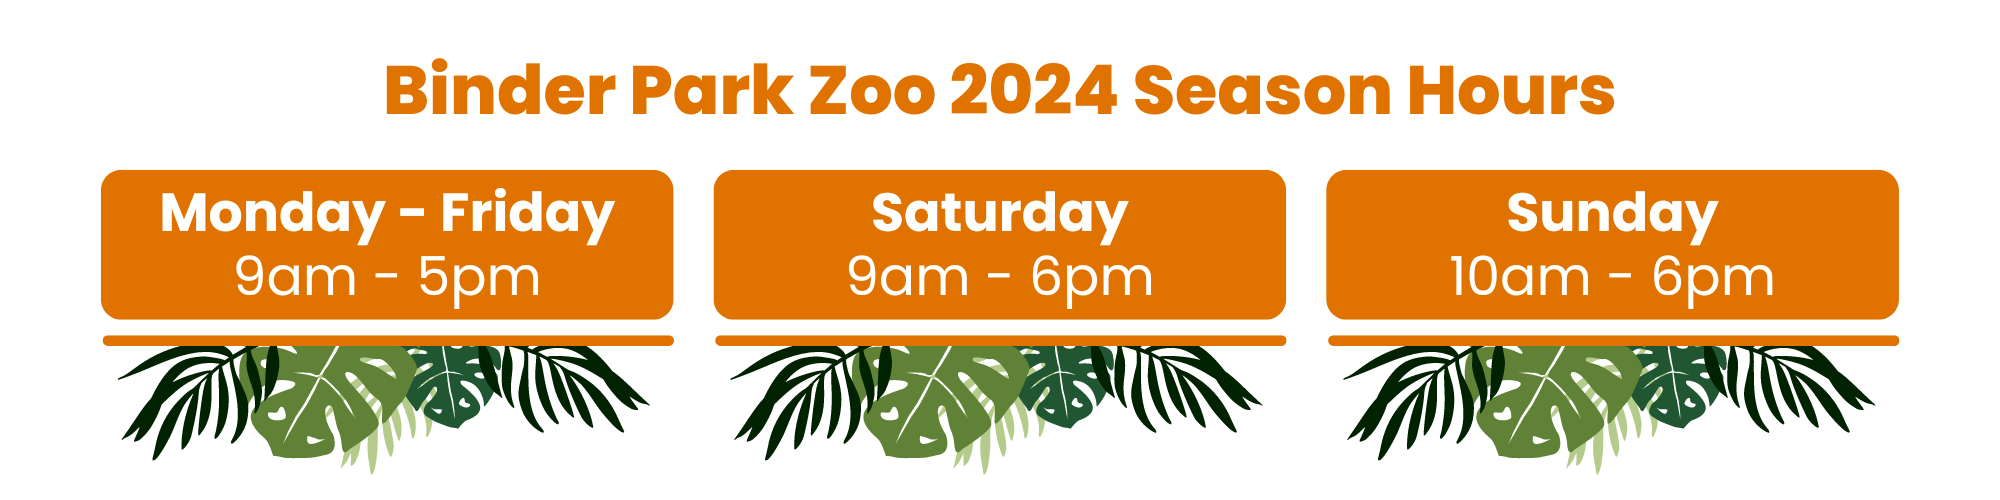 Binder Park Zoo 2024 Season Hours